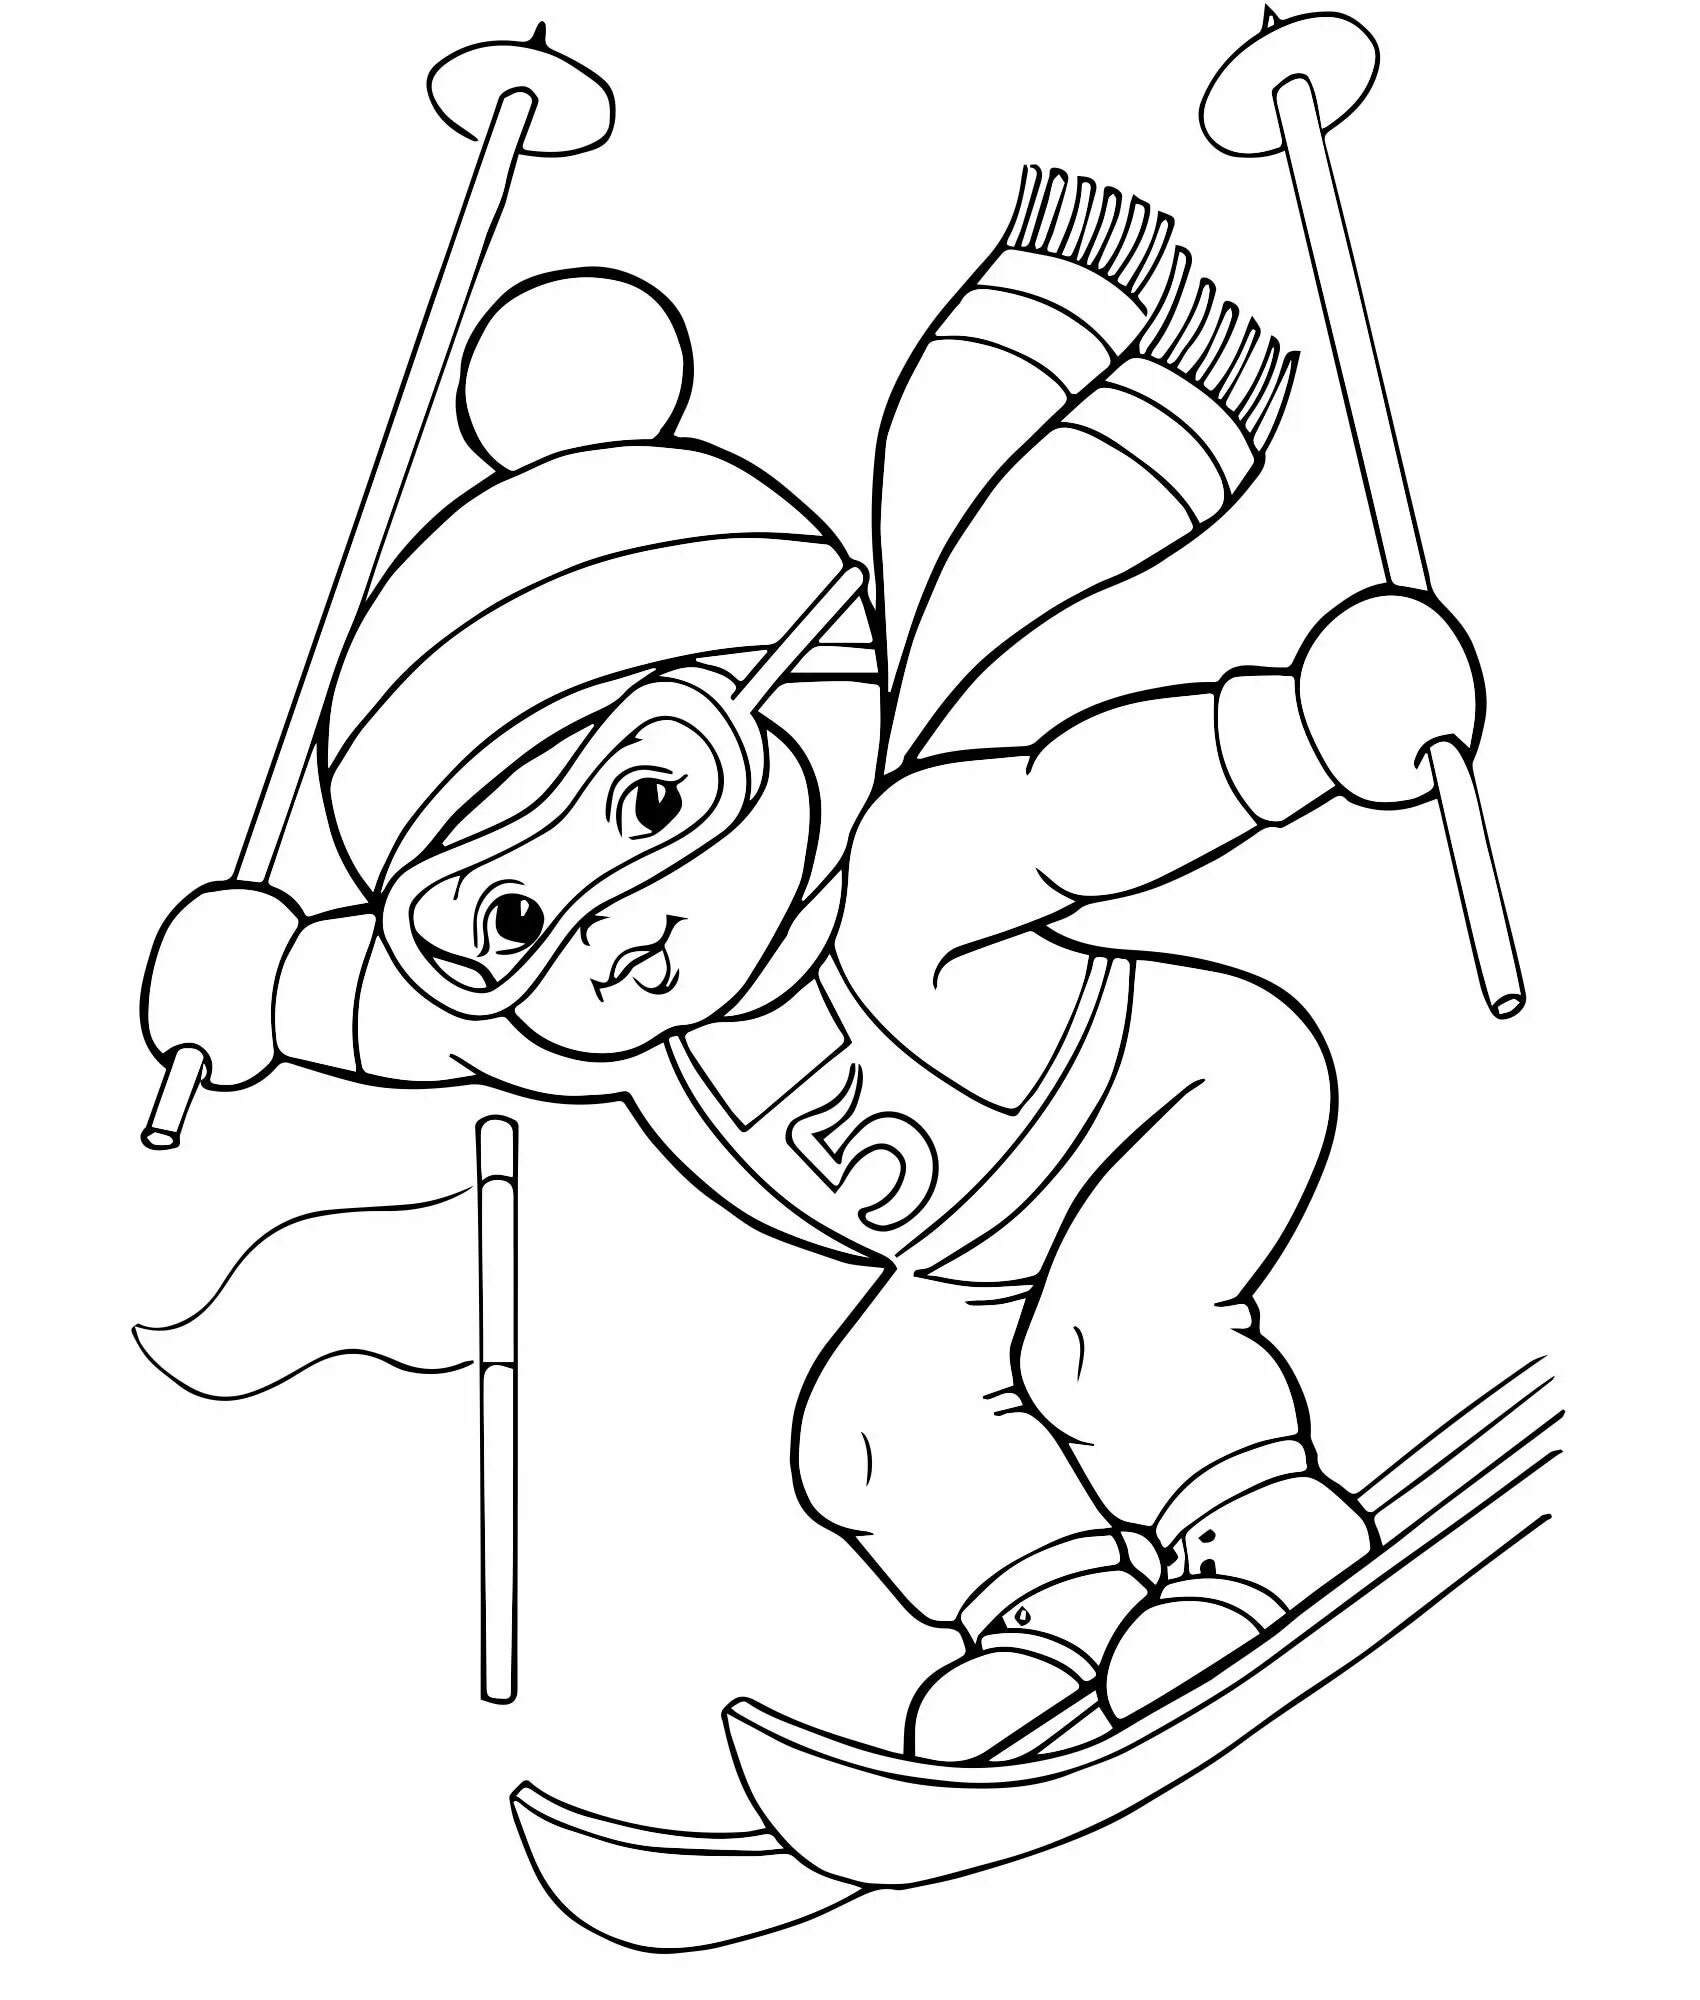 Preschool Wonderful Skier Coloring Page